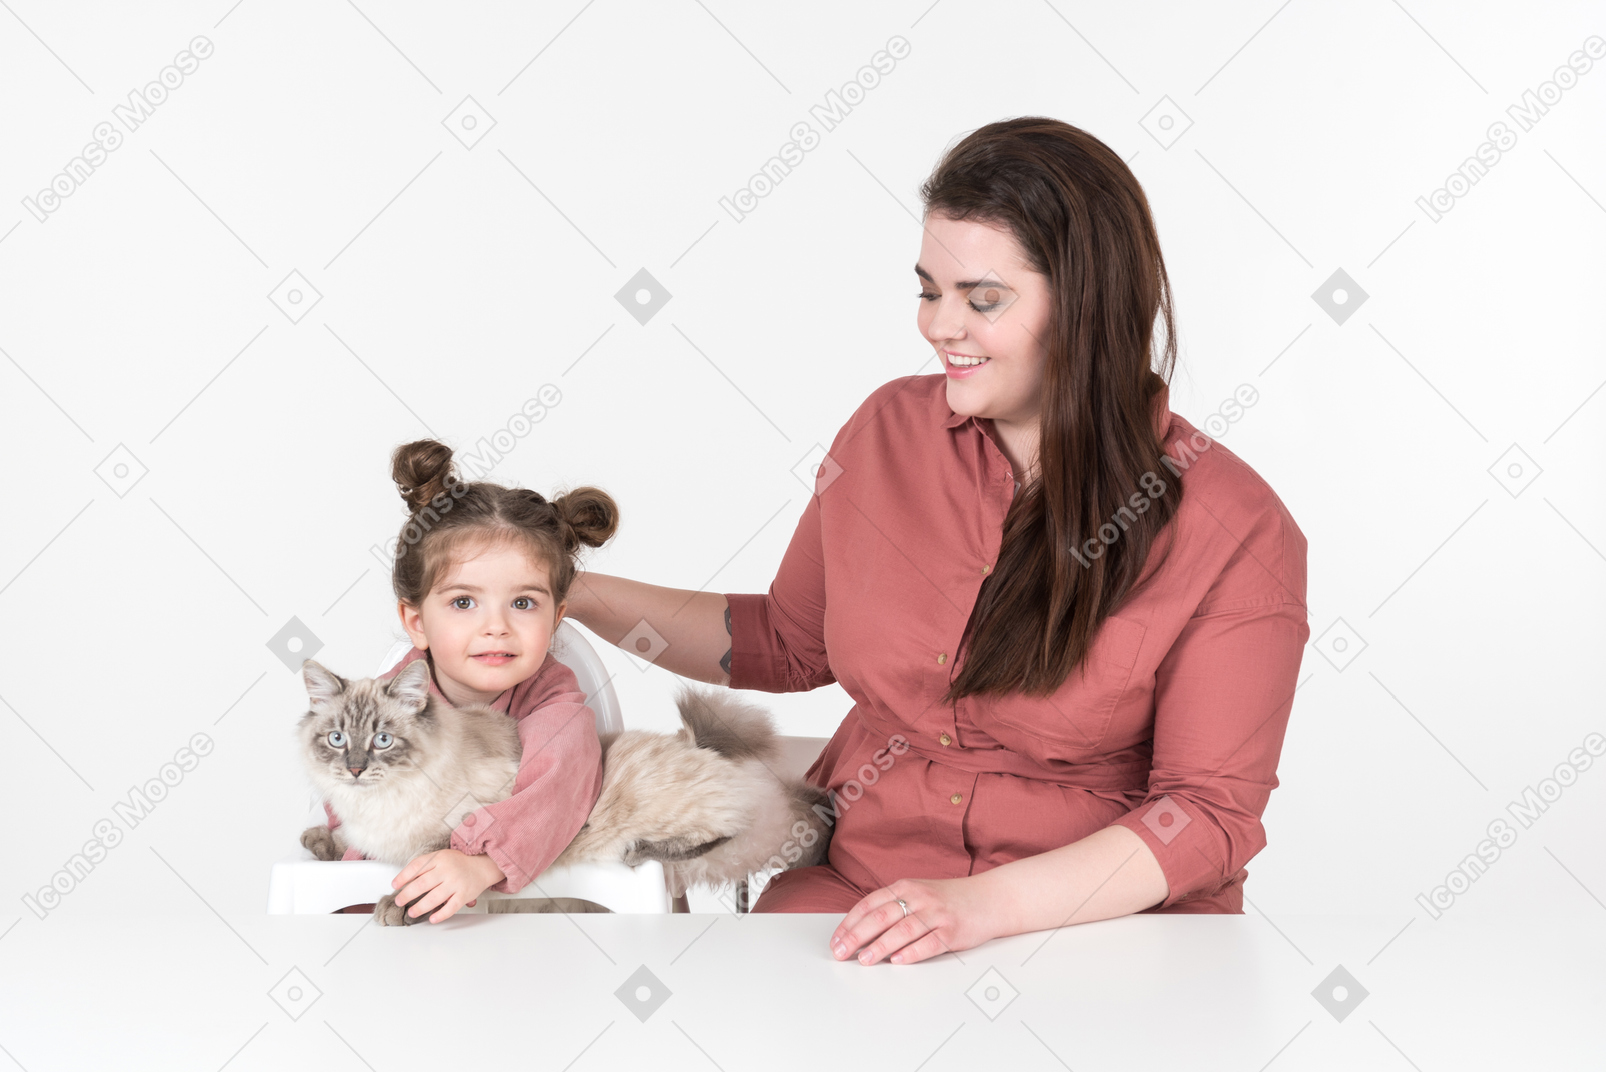 Mutter und ihre kleine tochter, rot und rosa gekleidet, sitzen mit ihrer familienkatze am esstisch